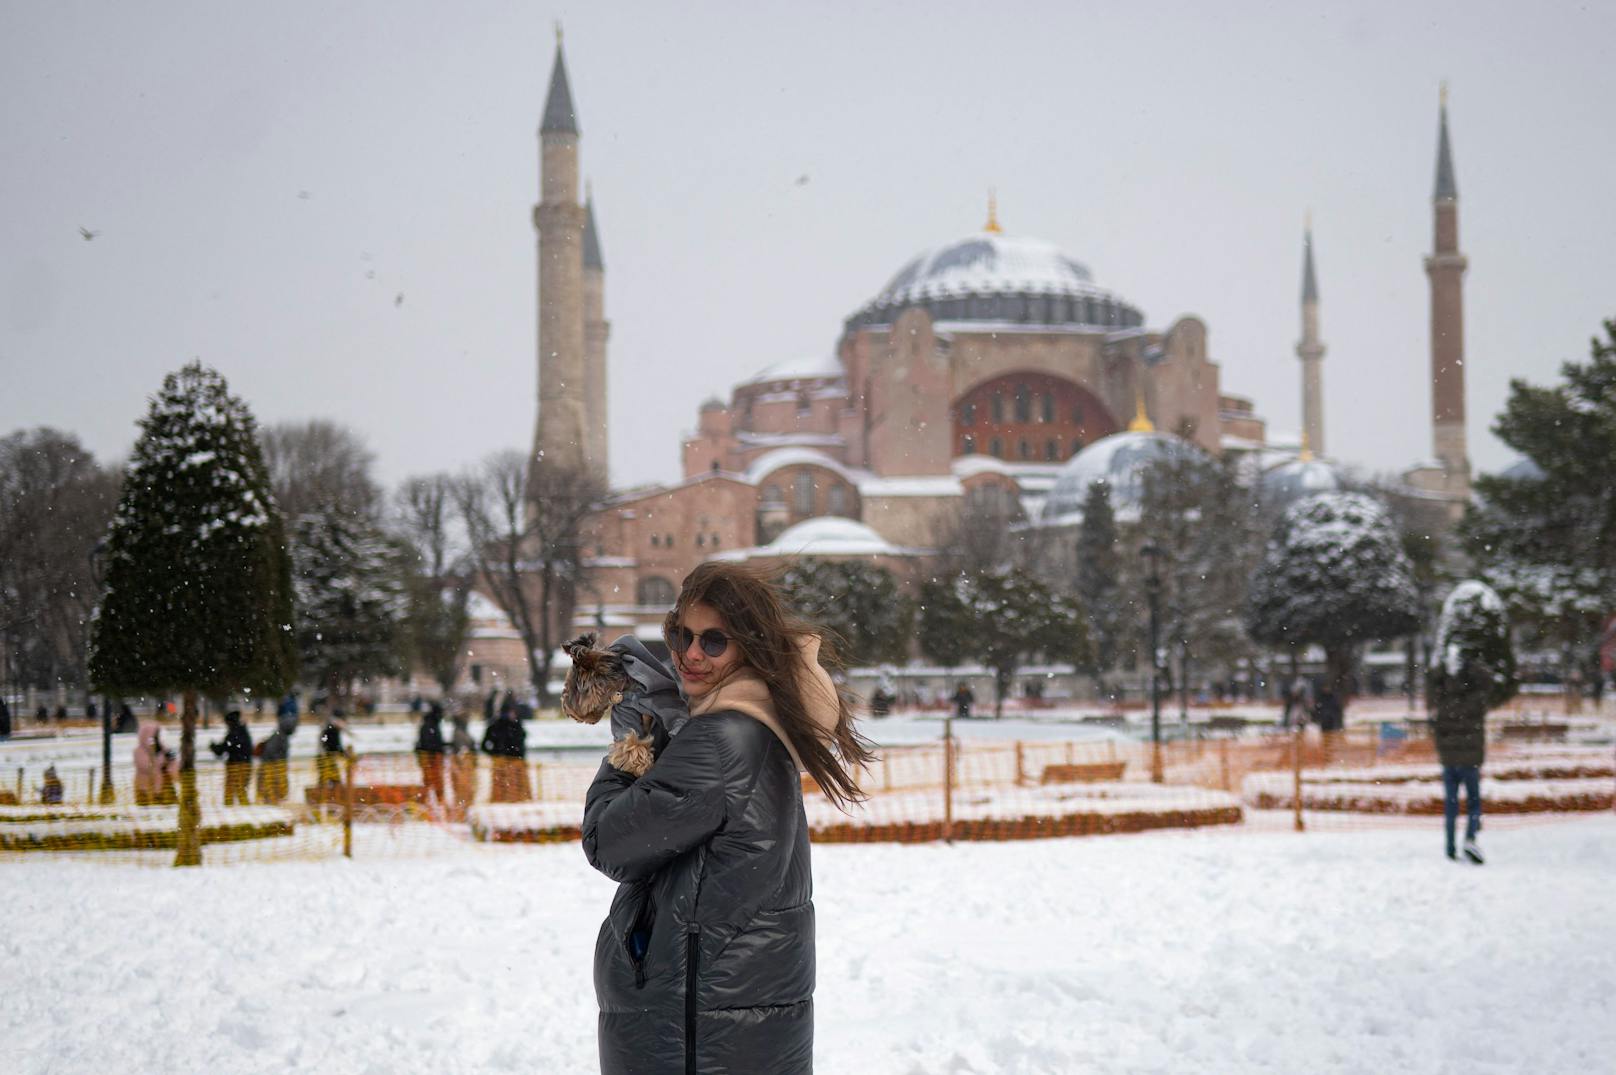 Ein seltenes Bild: Die Hagia Sofia in Istanbul ist dieser Tage von Schnee umgeben.